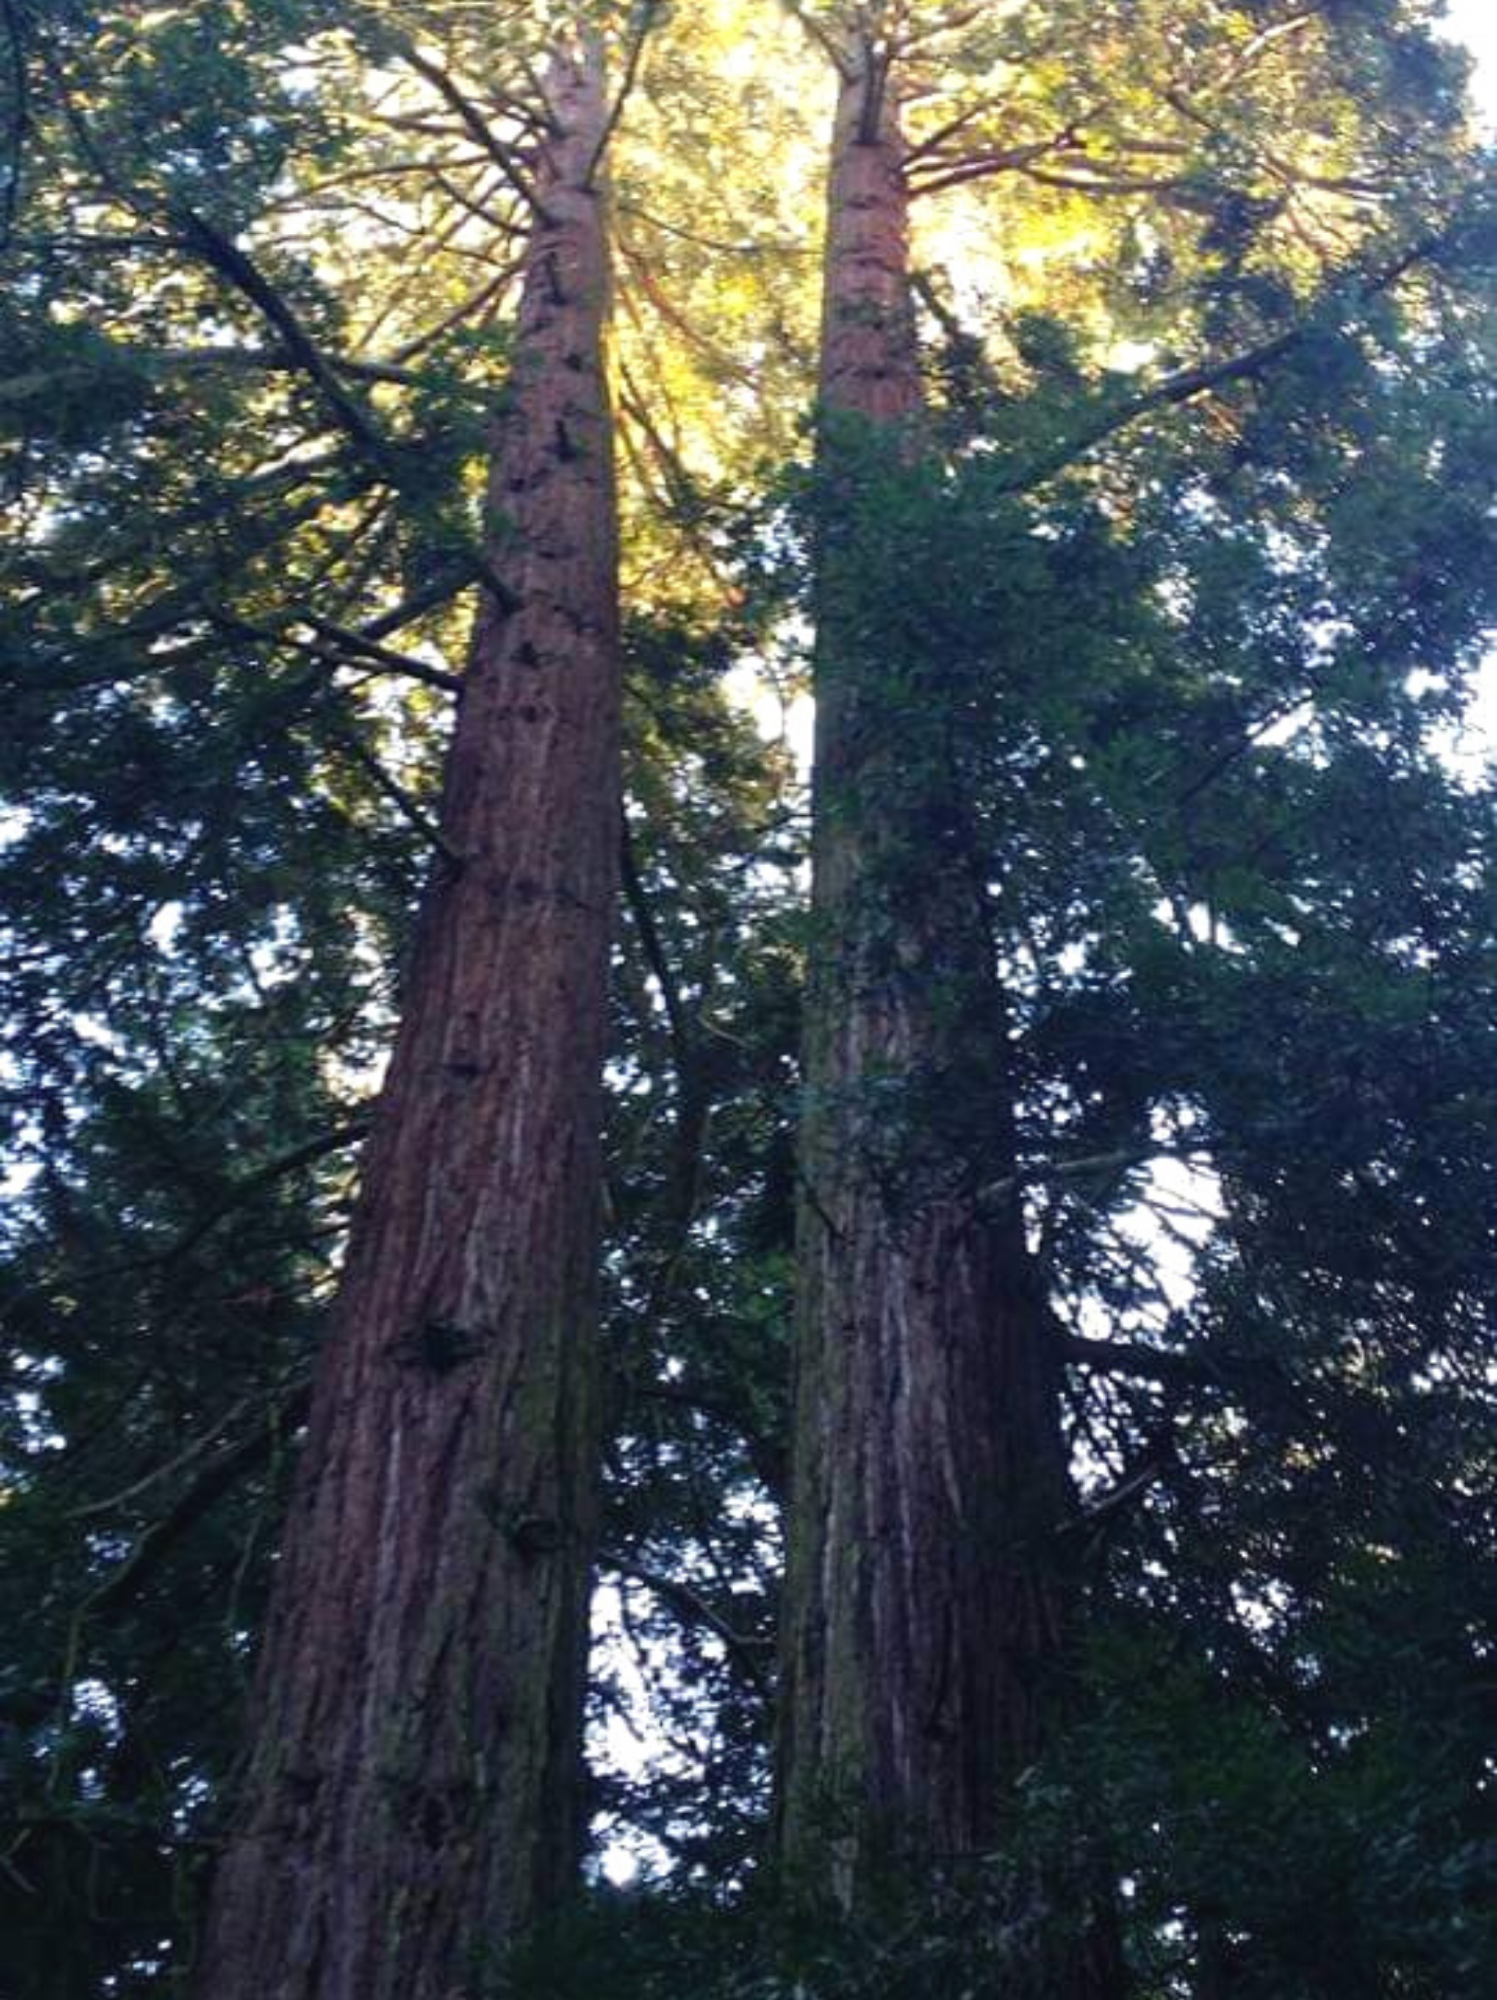 Sequoia Gemella a Sammezzano